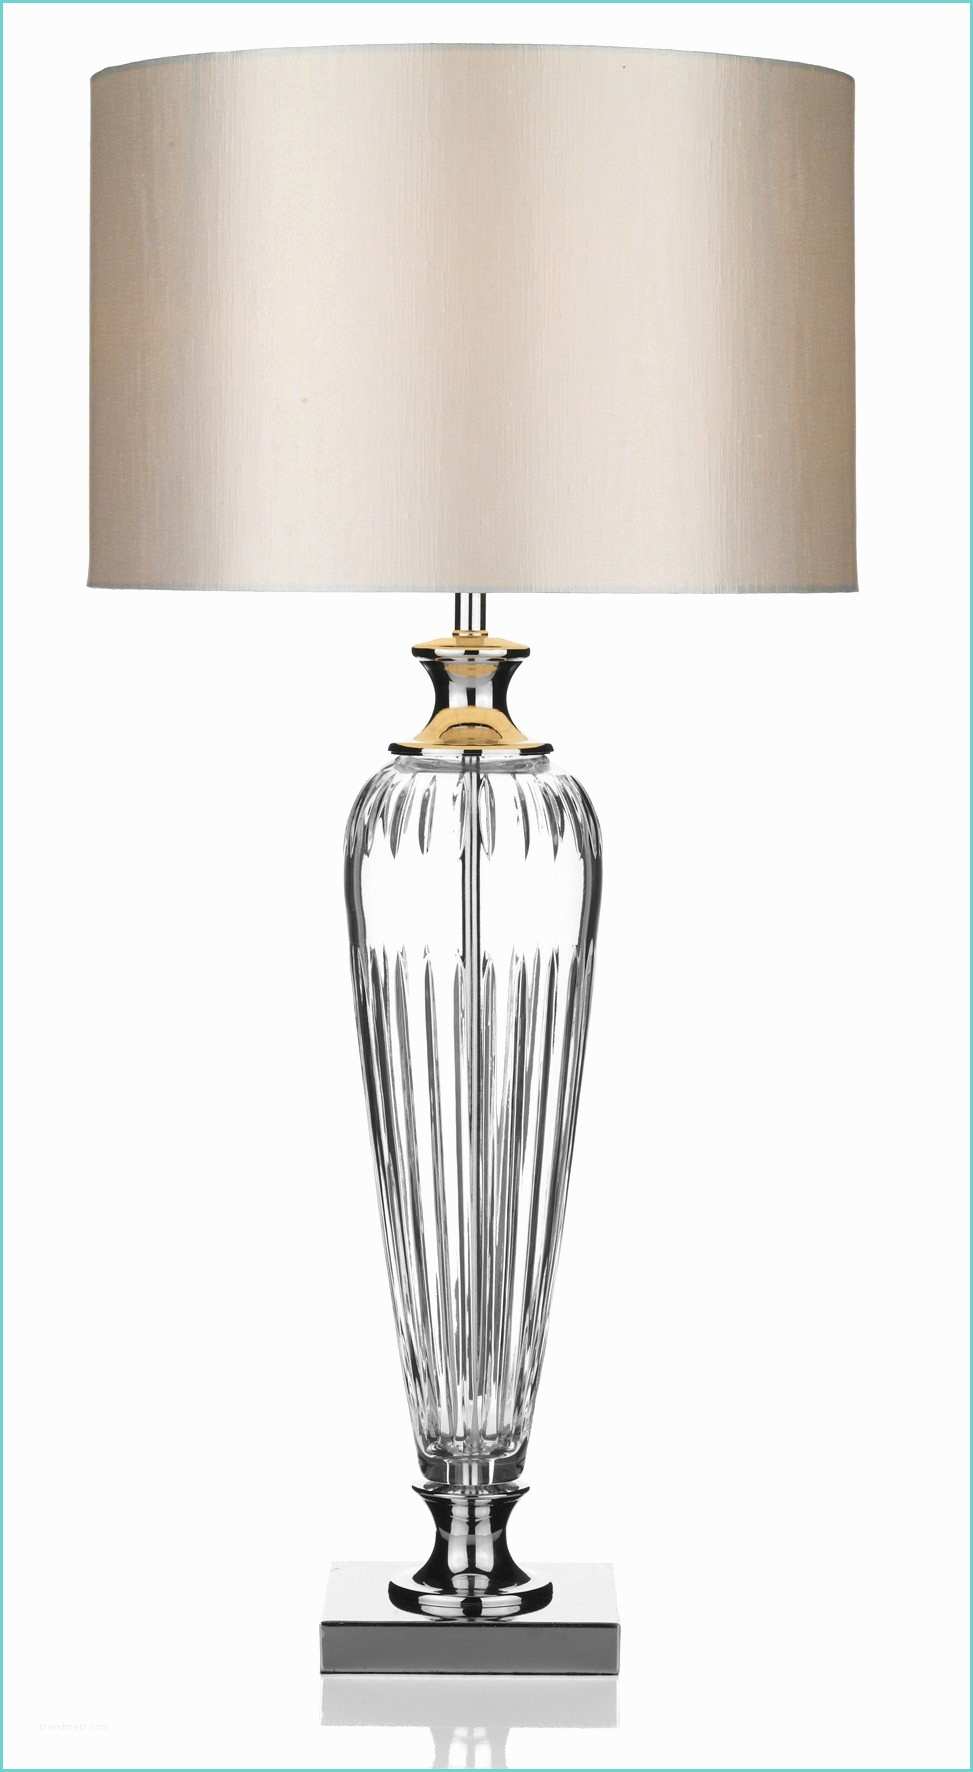 Lampe De Chevet Design Lampe Design De Chevet Et Inspirations Avec Grandes Lampes